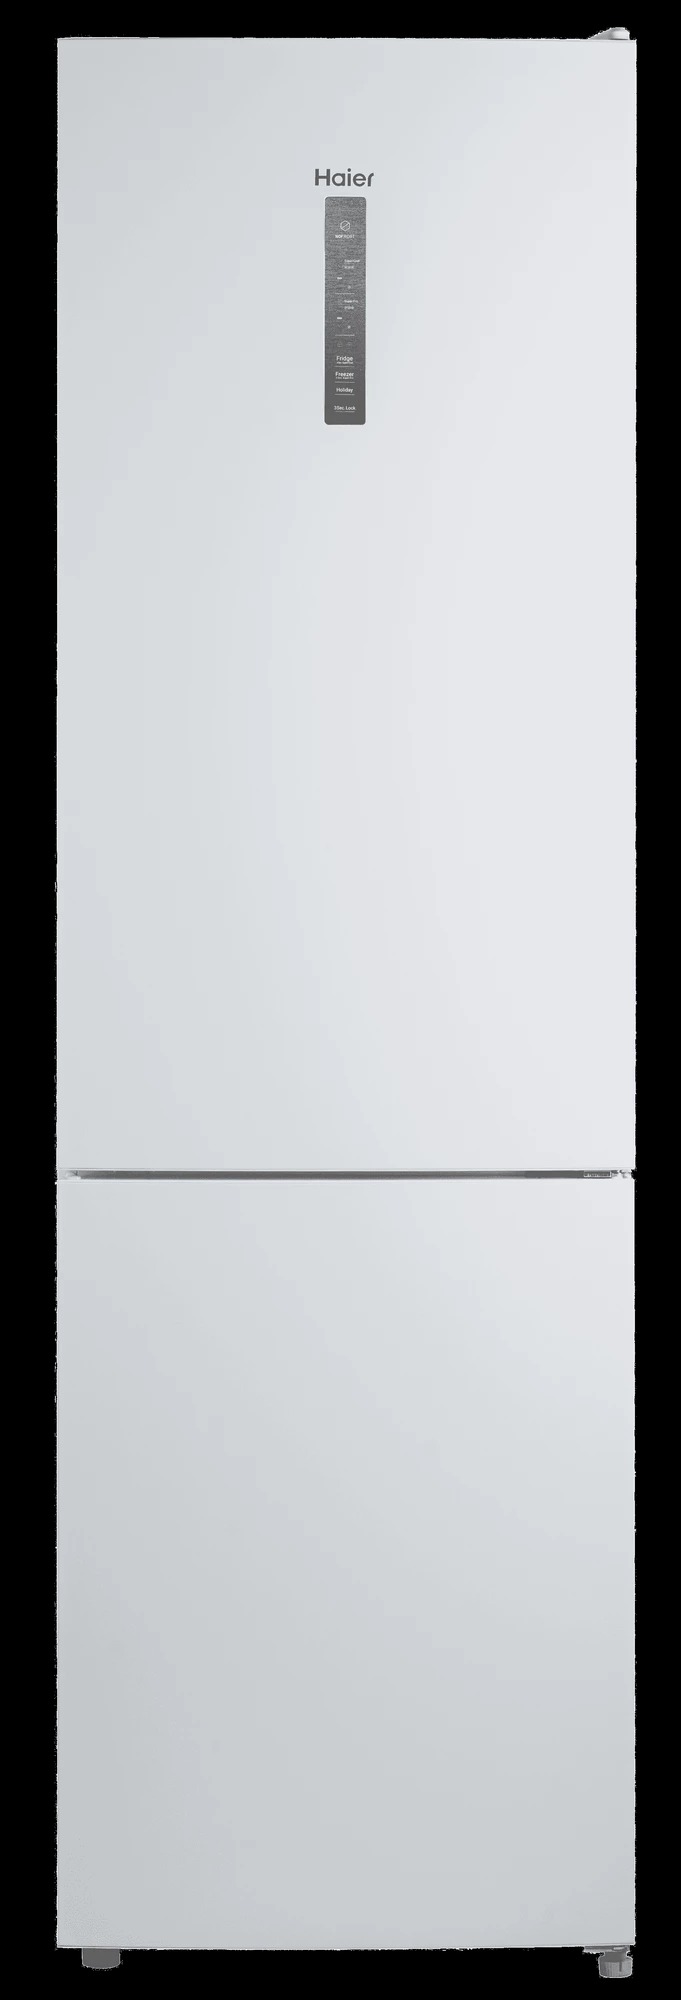 Холодильник Haier CEF537AWD белый холодильник haier a2f637cgg золотистый